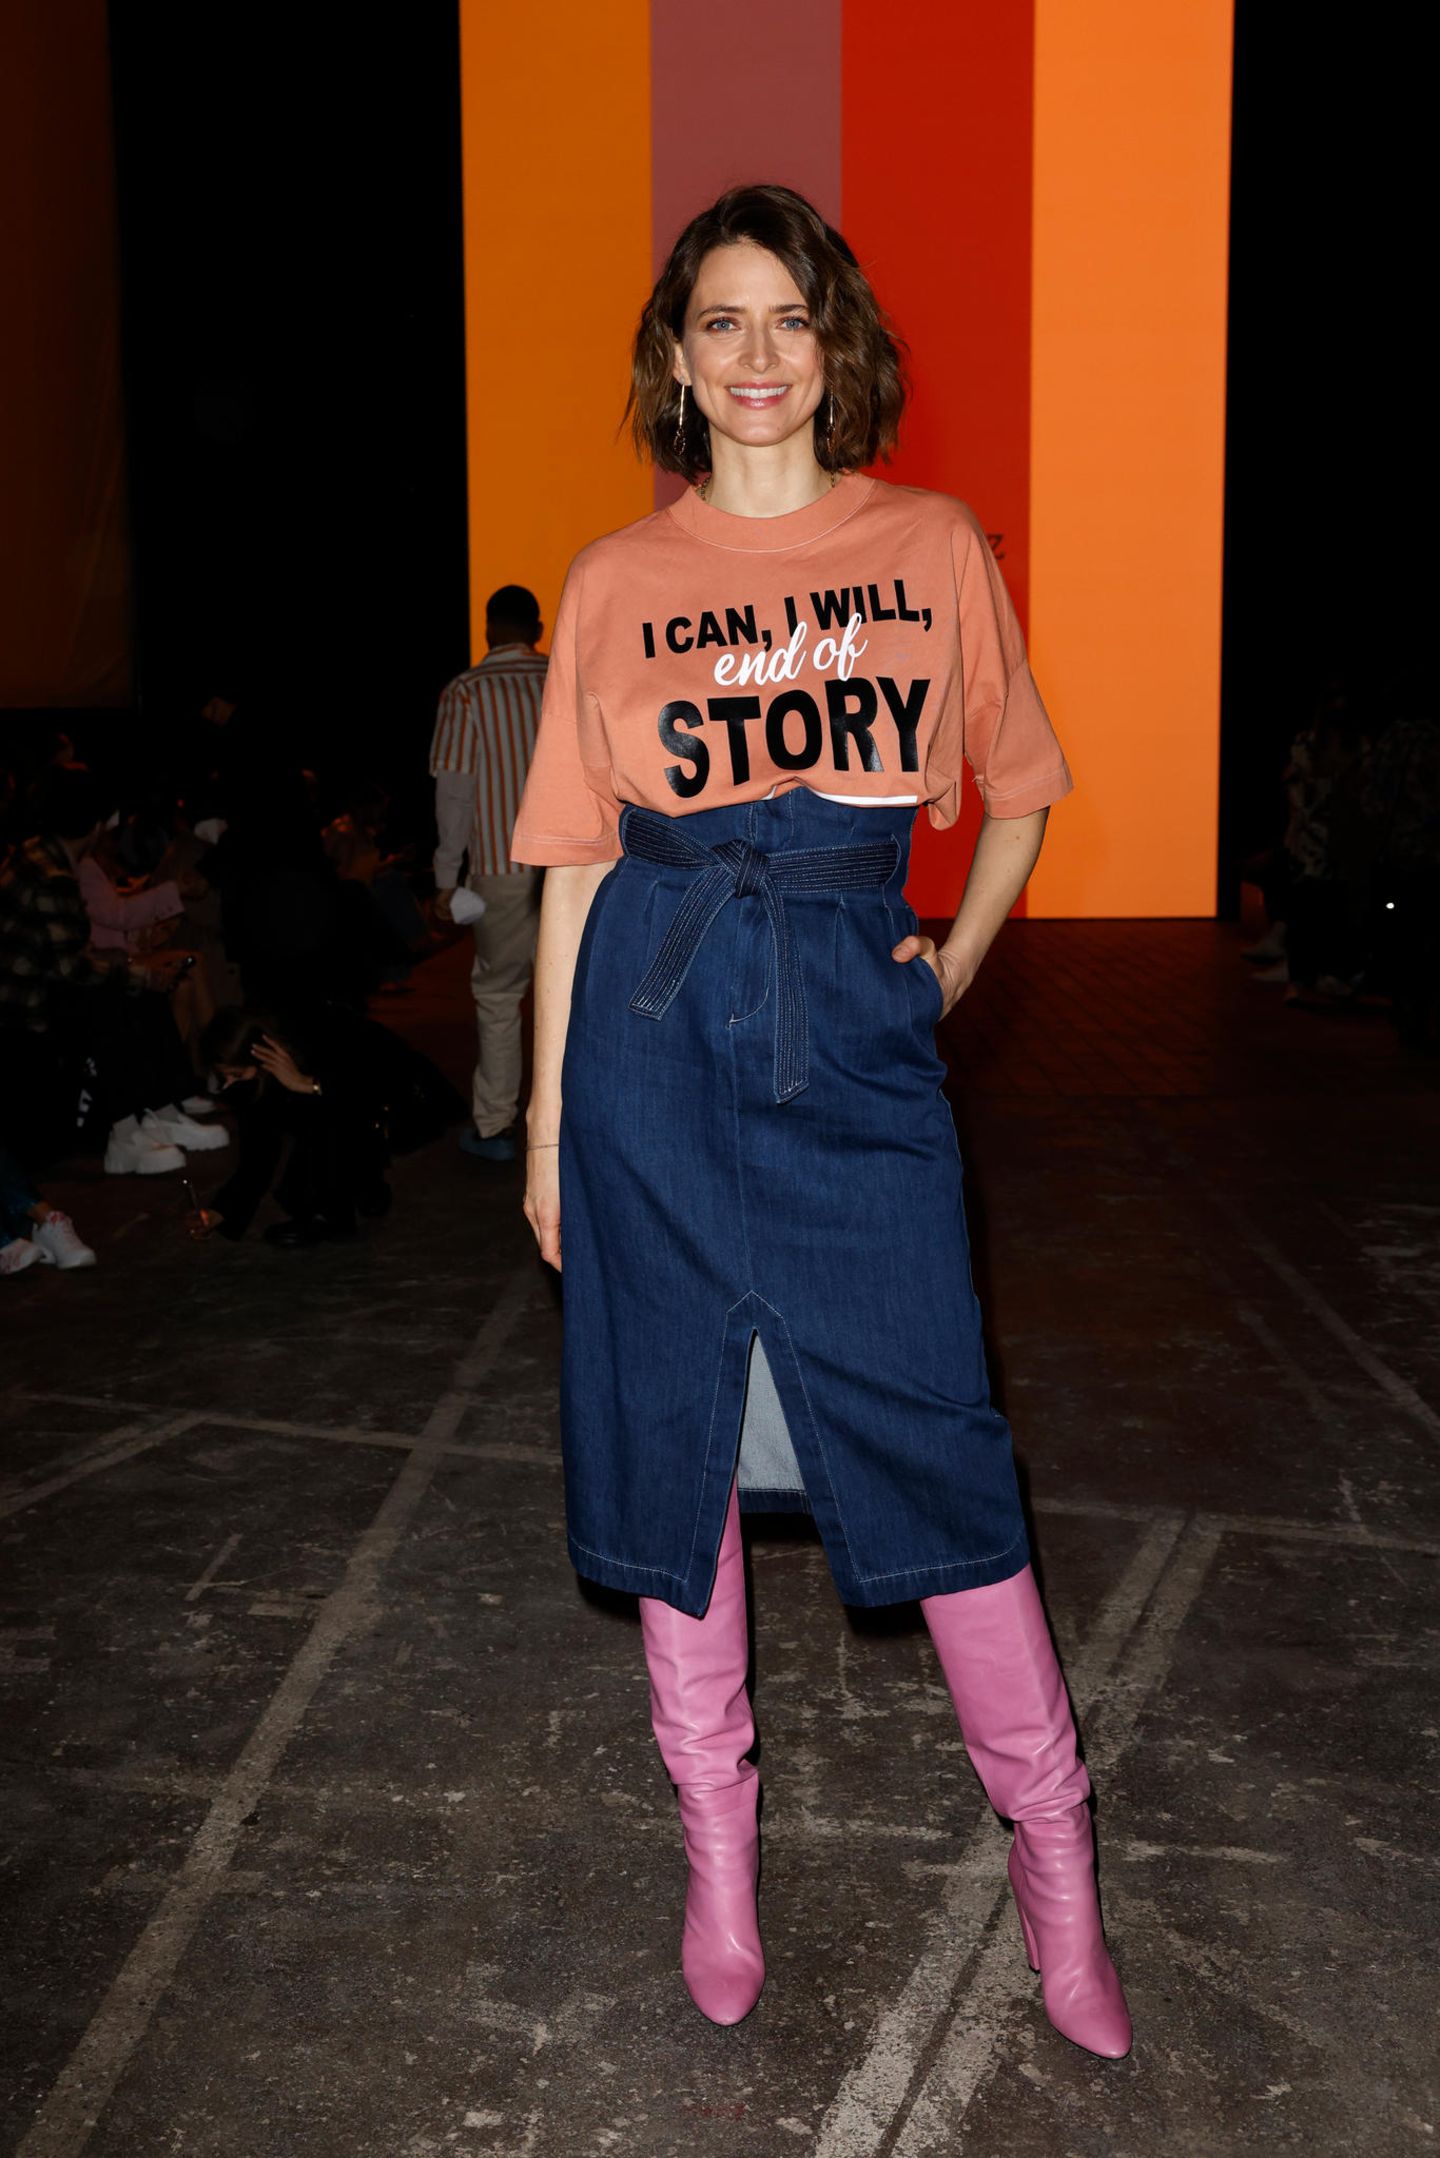 Model Eva Padberg ist zu Gast bei der Fashionshow von Rebekka Ruetz und setzt mit ihrem T-Shirt ein klares Statement. 